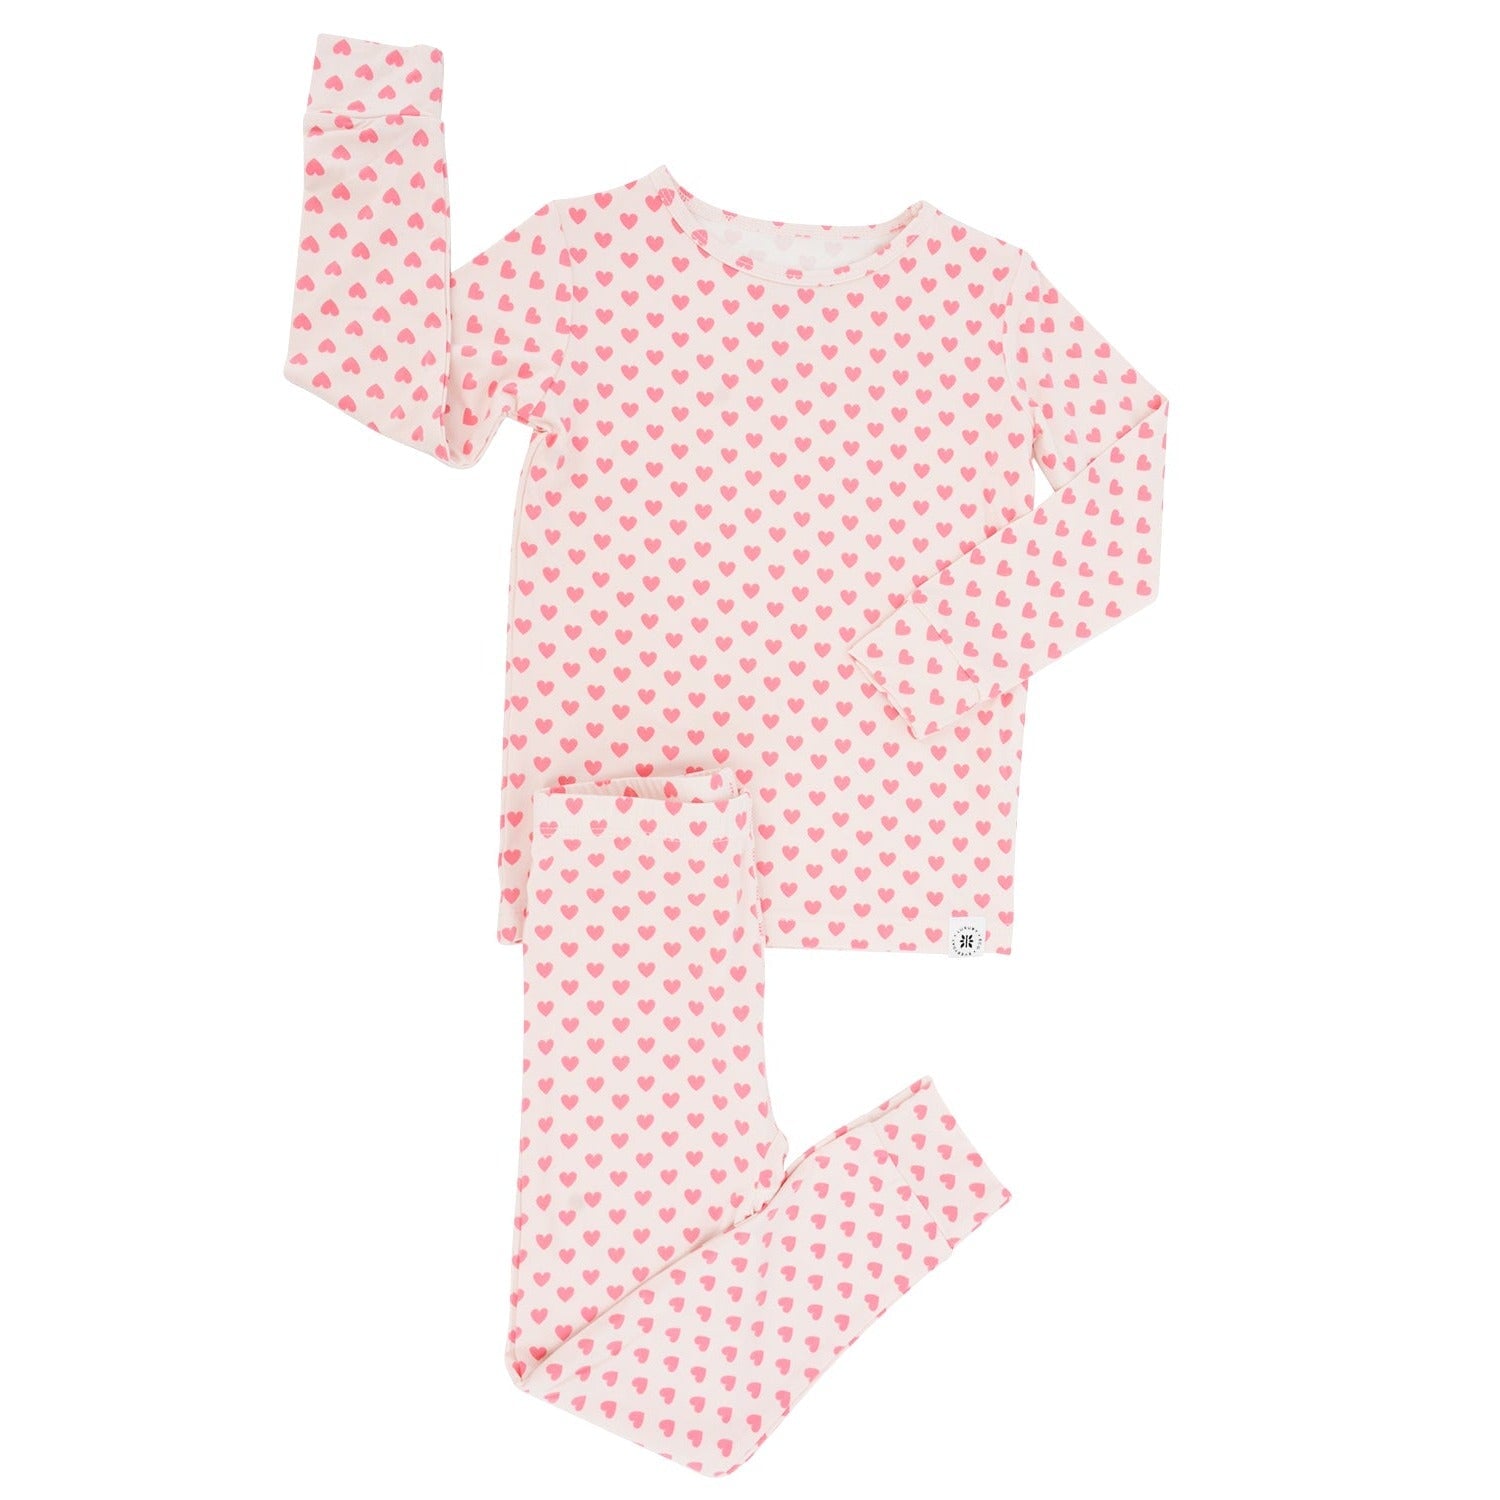 Big Kid Pajama - Pink Hearts